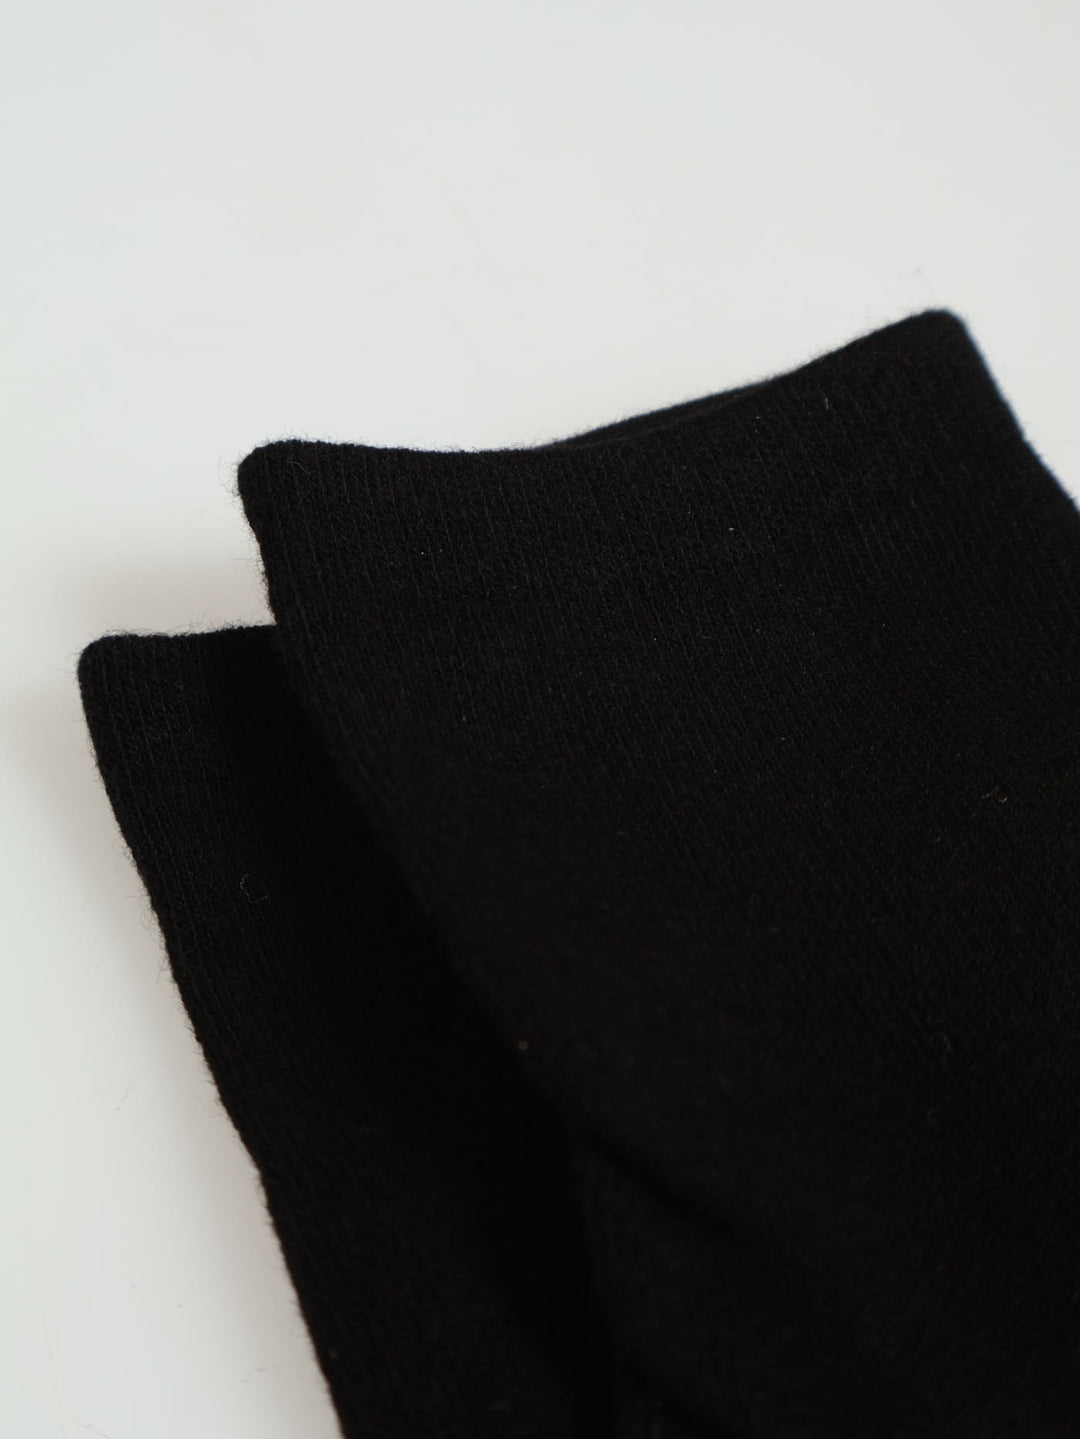 Boys Unisex Single Pair Socks - Black